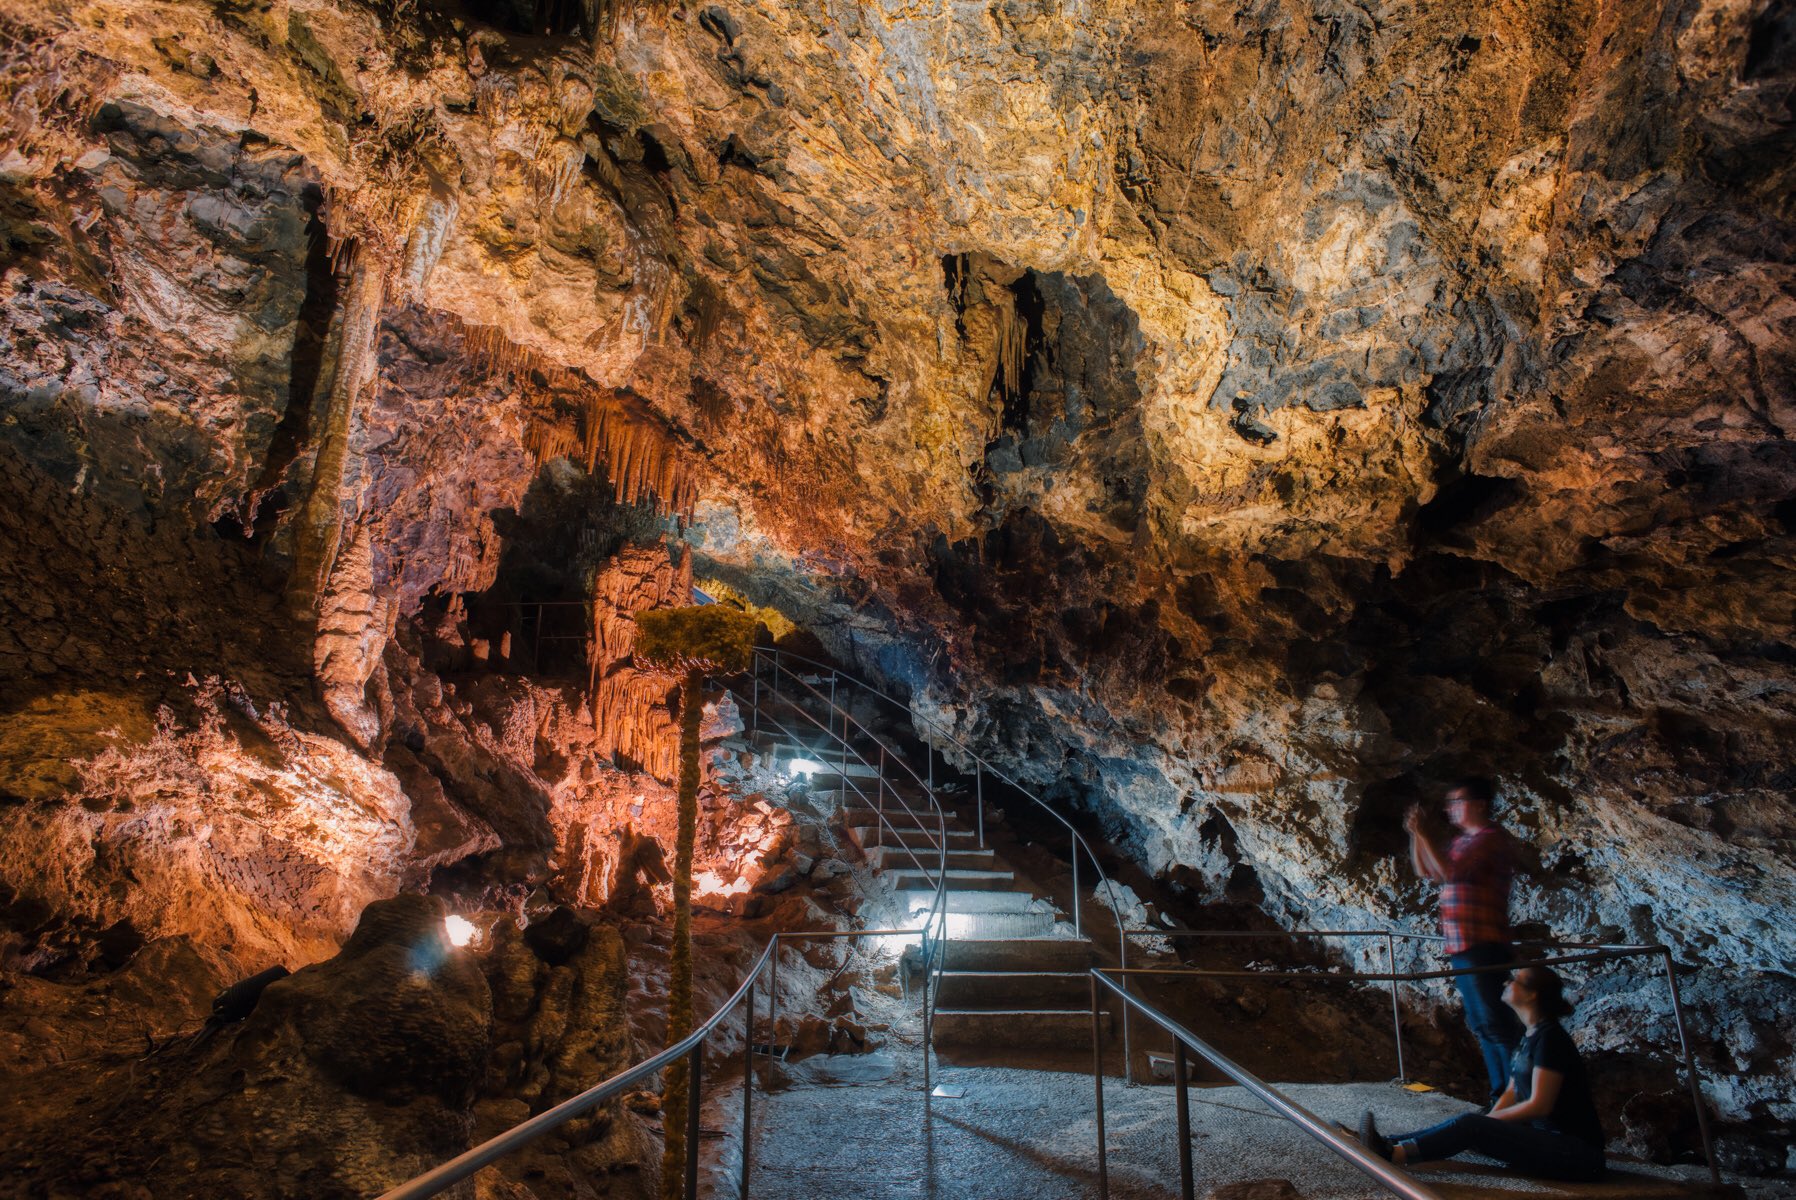 grutas nombre dios turismo en chihuahua